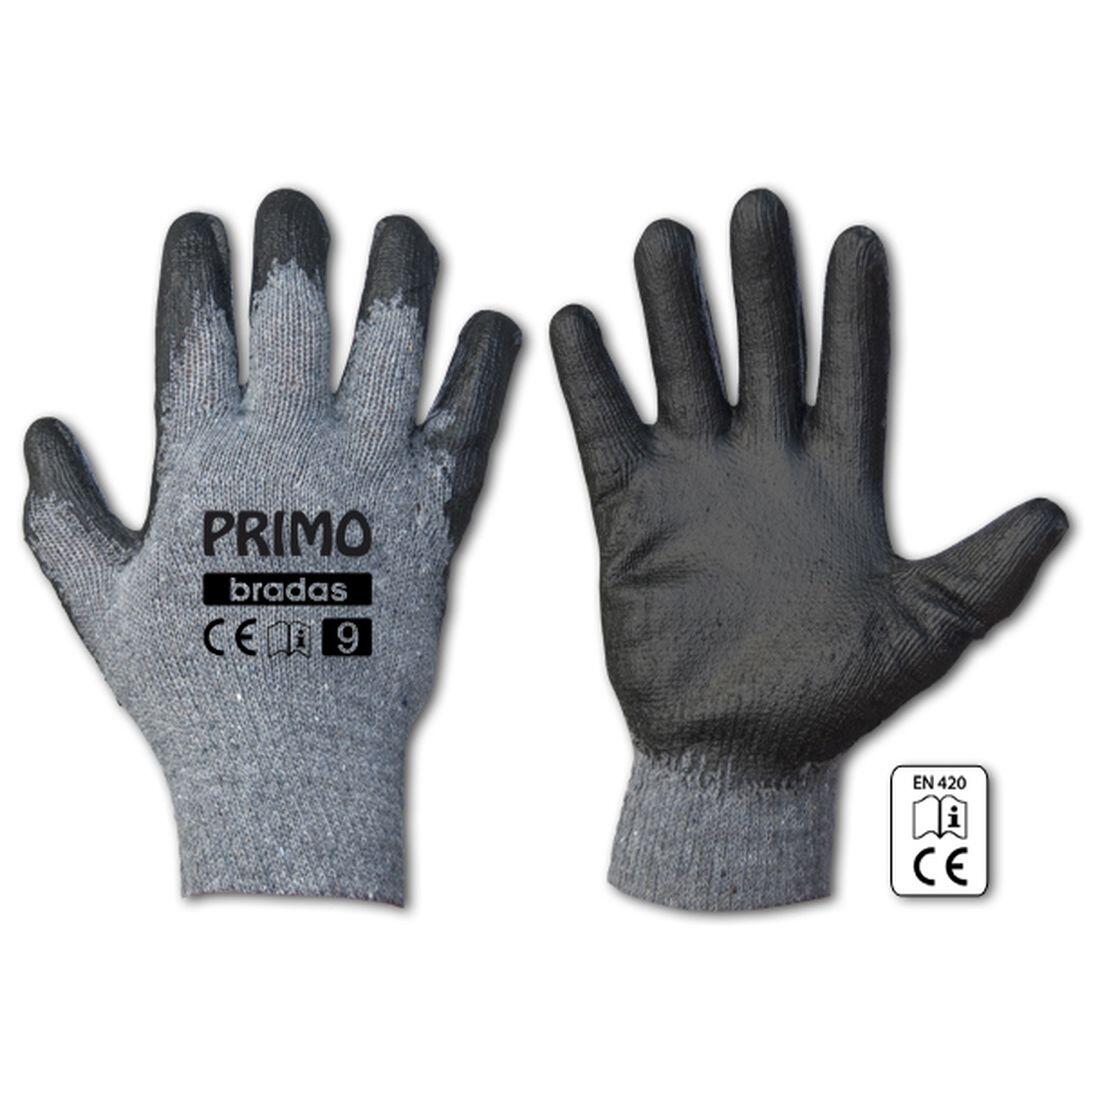 rukavice PRIMO latex  8 0.07 Kg MAXMIX Sklad14 715682 344